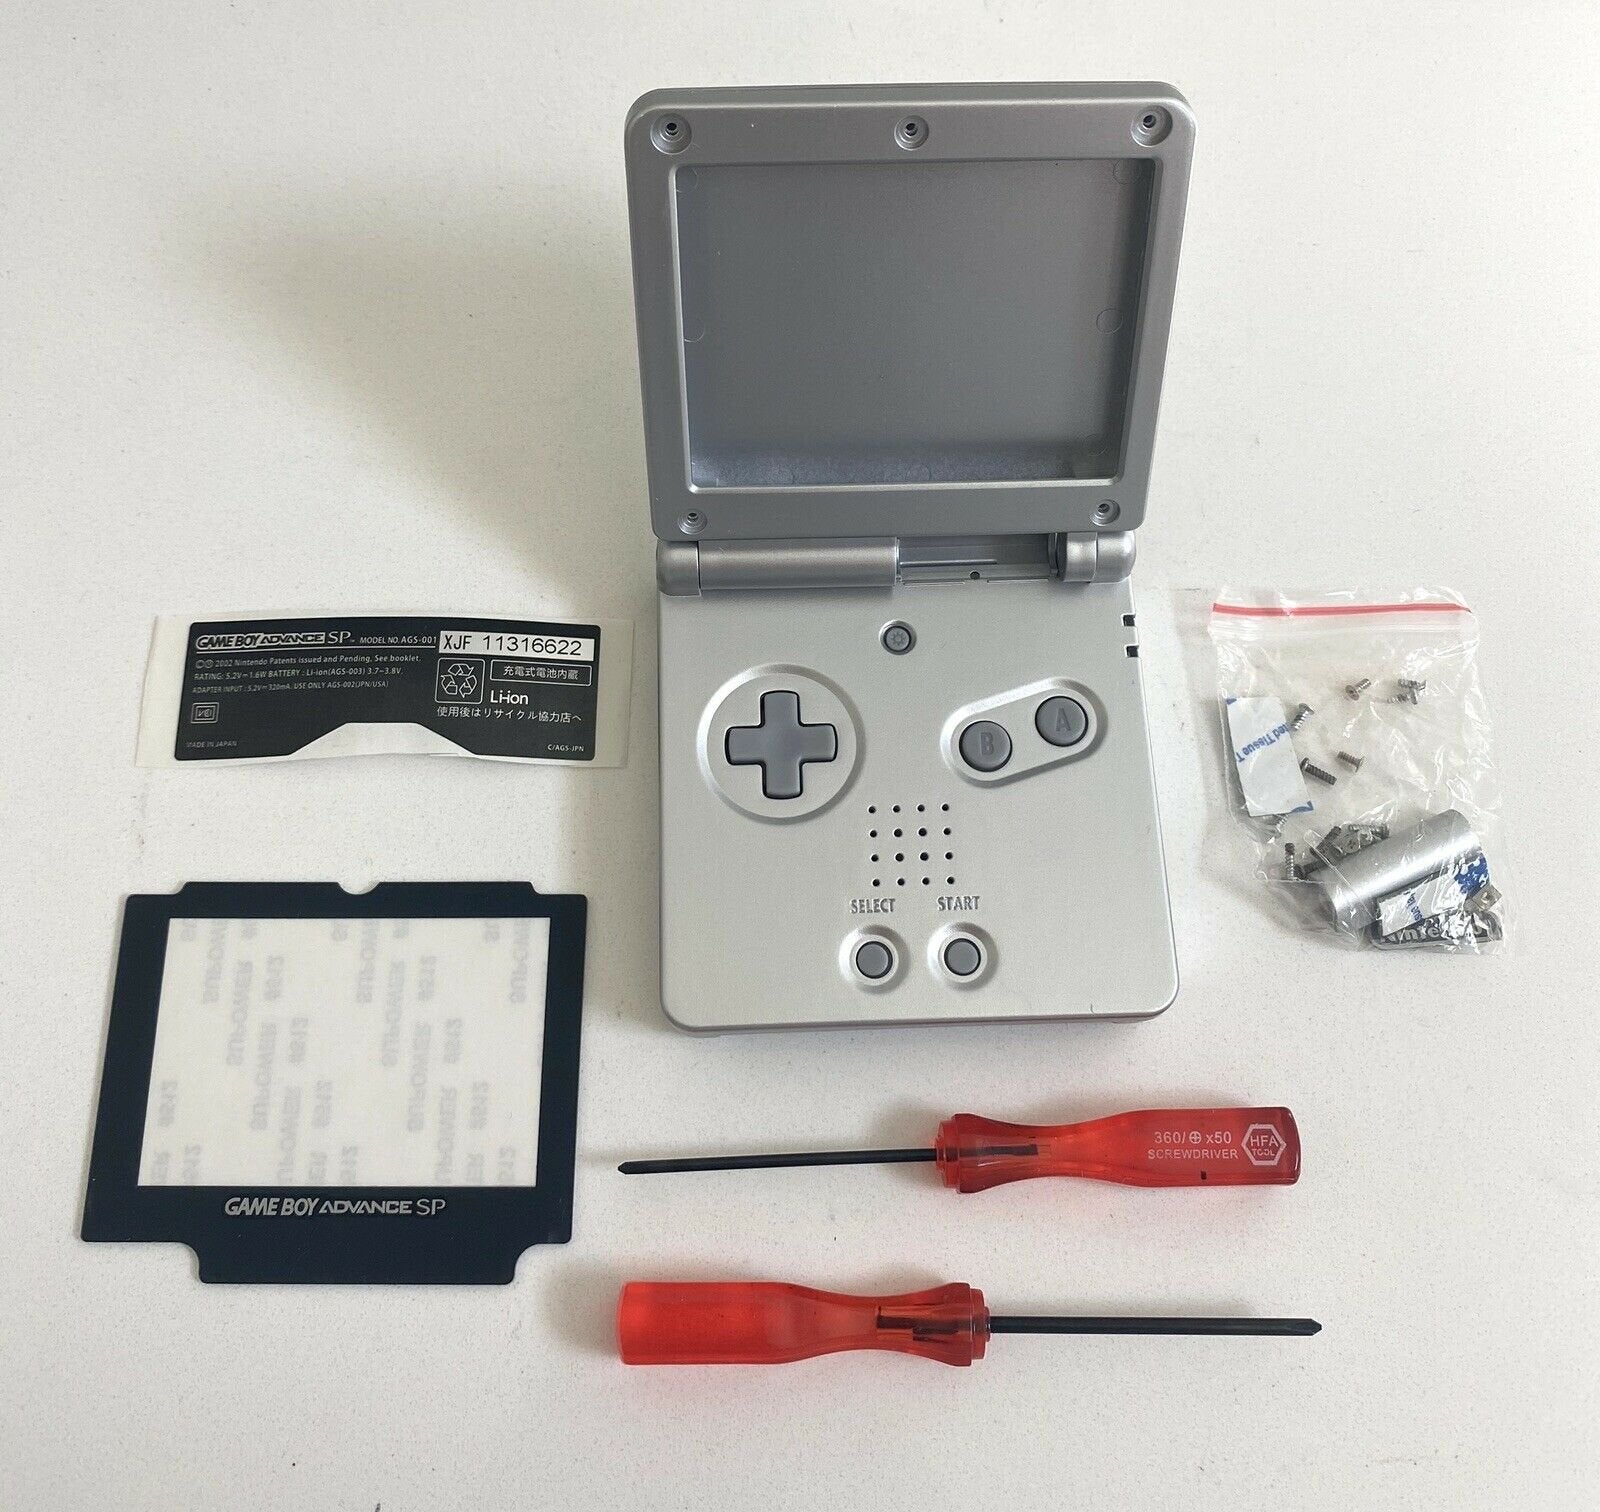 Nintendo Game Boy Advance SP - Silver JAPAN